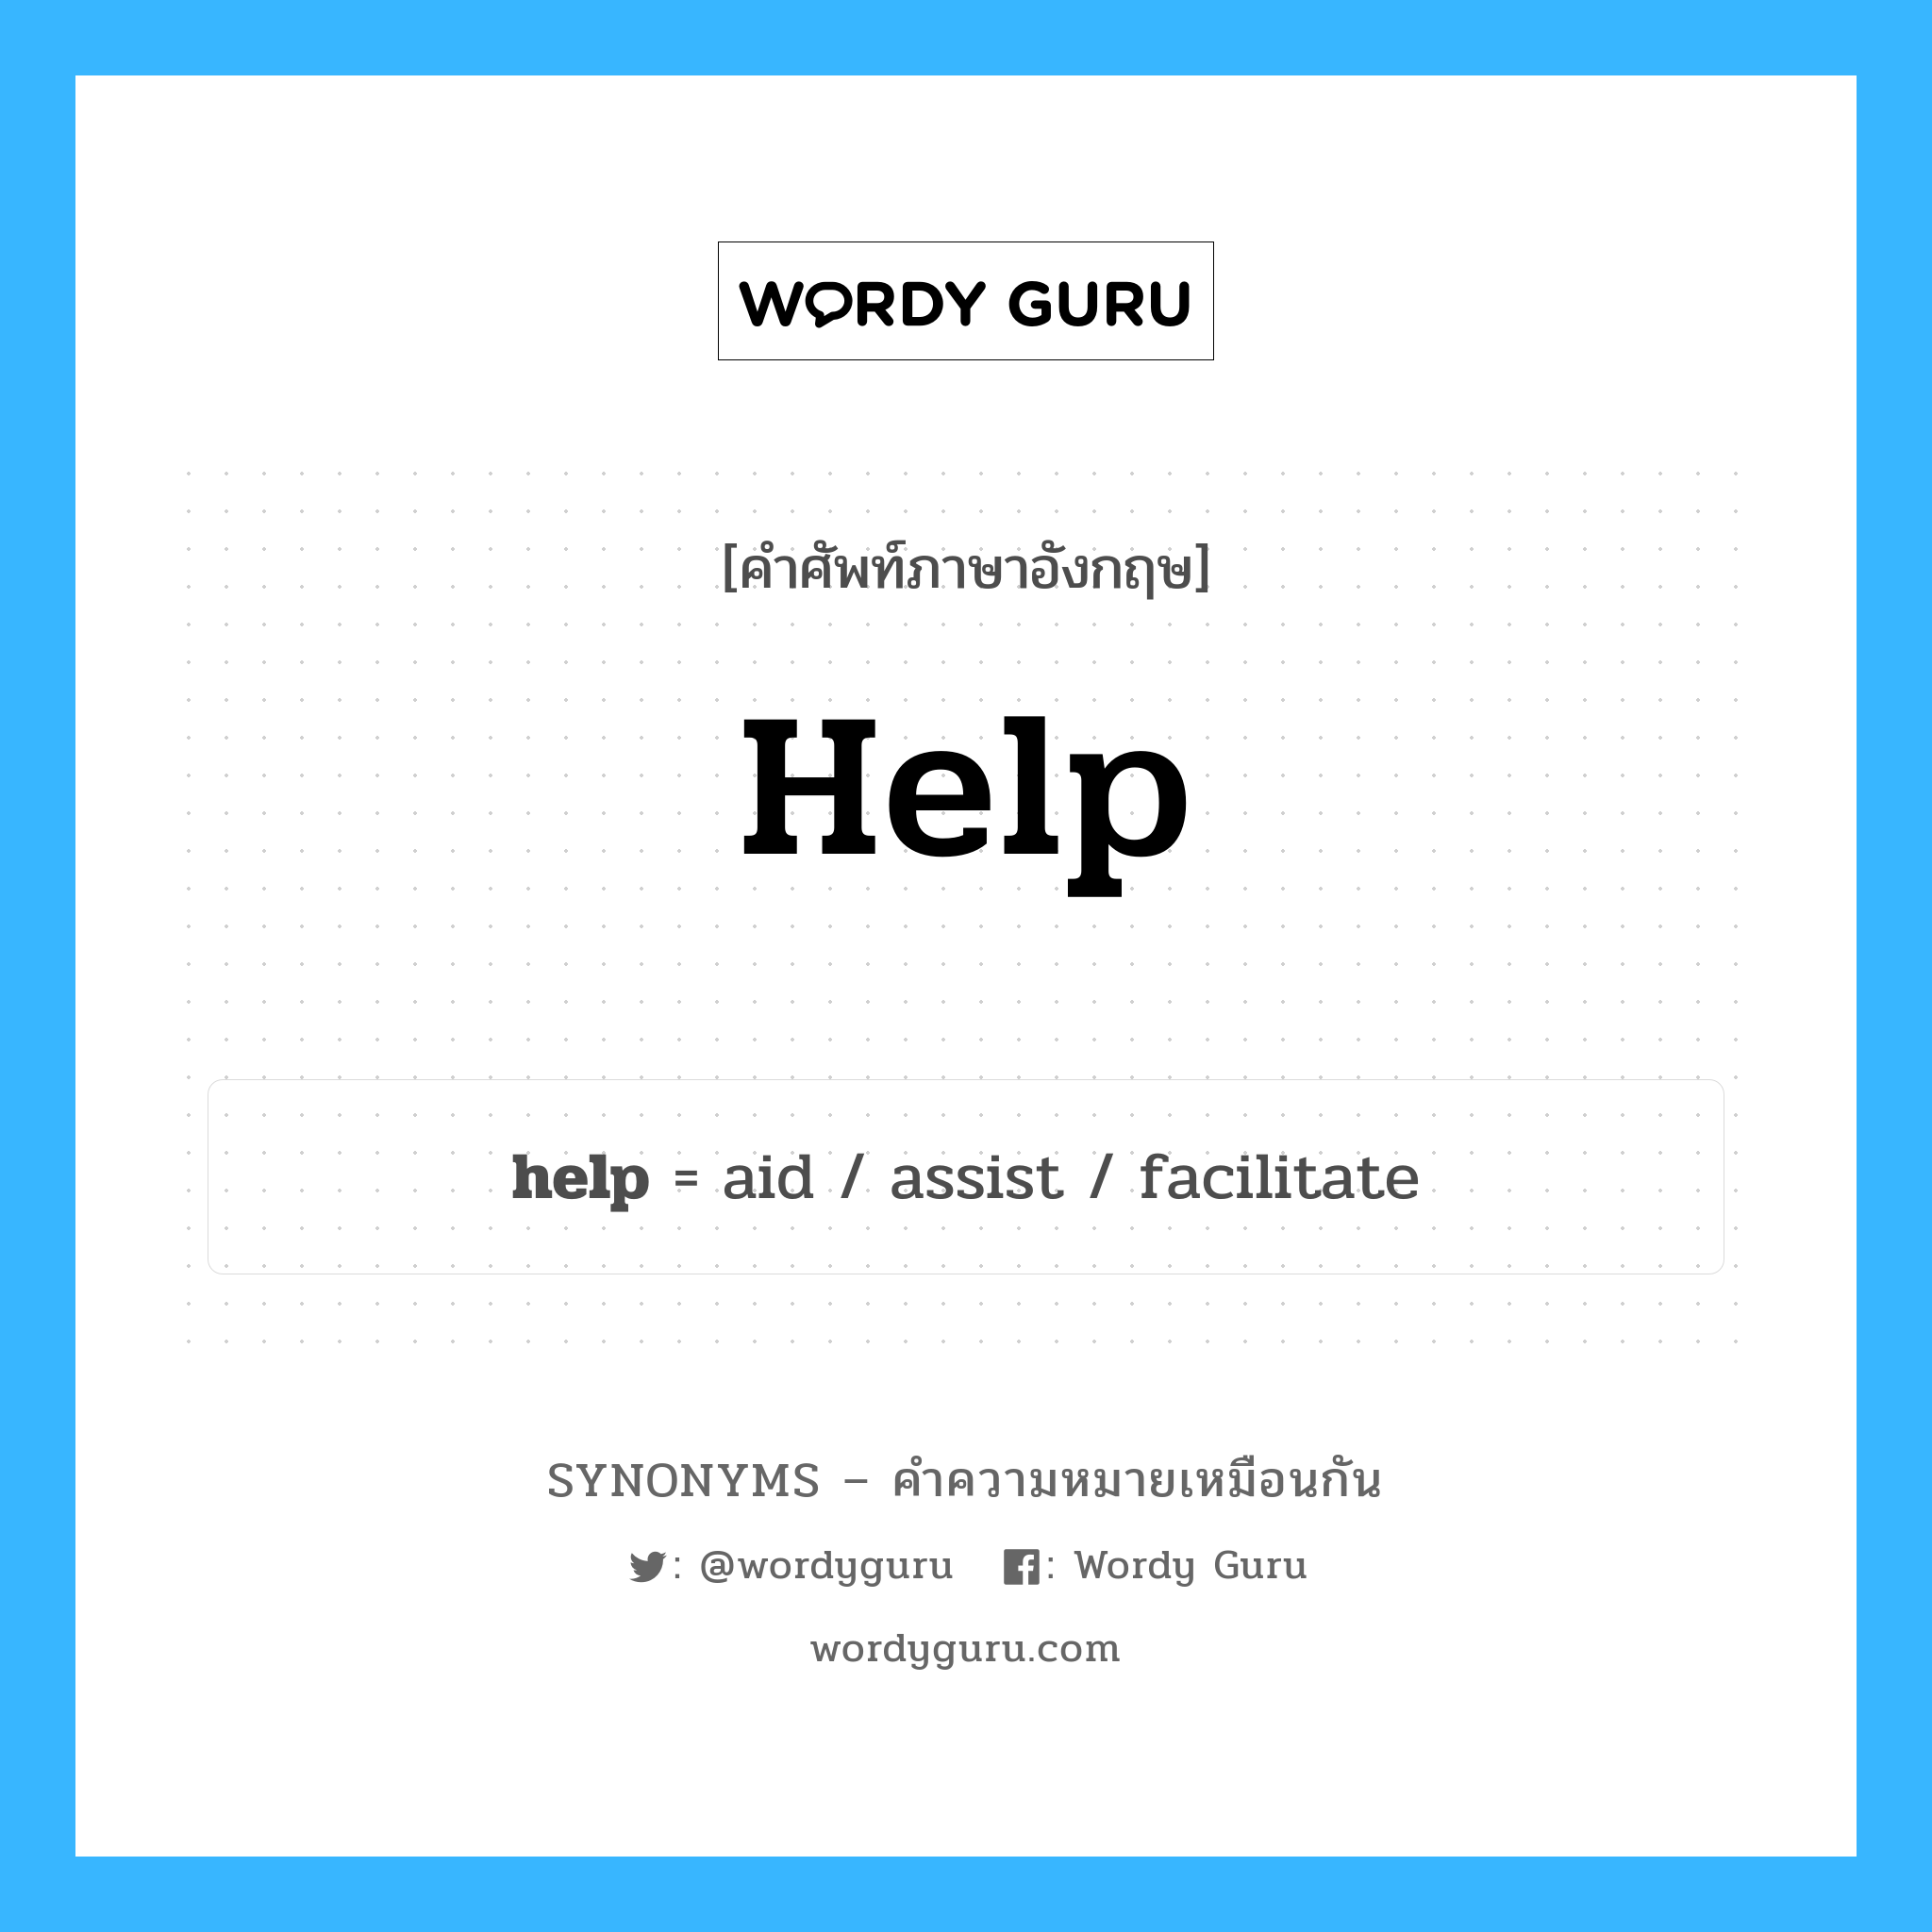 help เป็นหนึ่งใน assist และมีคำอื่น ๆ อีกดังนี้, คำศัพท์ภาษาอังกฤษ help ความหมายคล้ายกันกับ assist แปลว่า ให้ความช่วยเหลือ หมวด assist